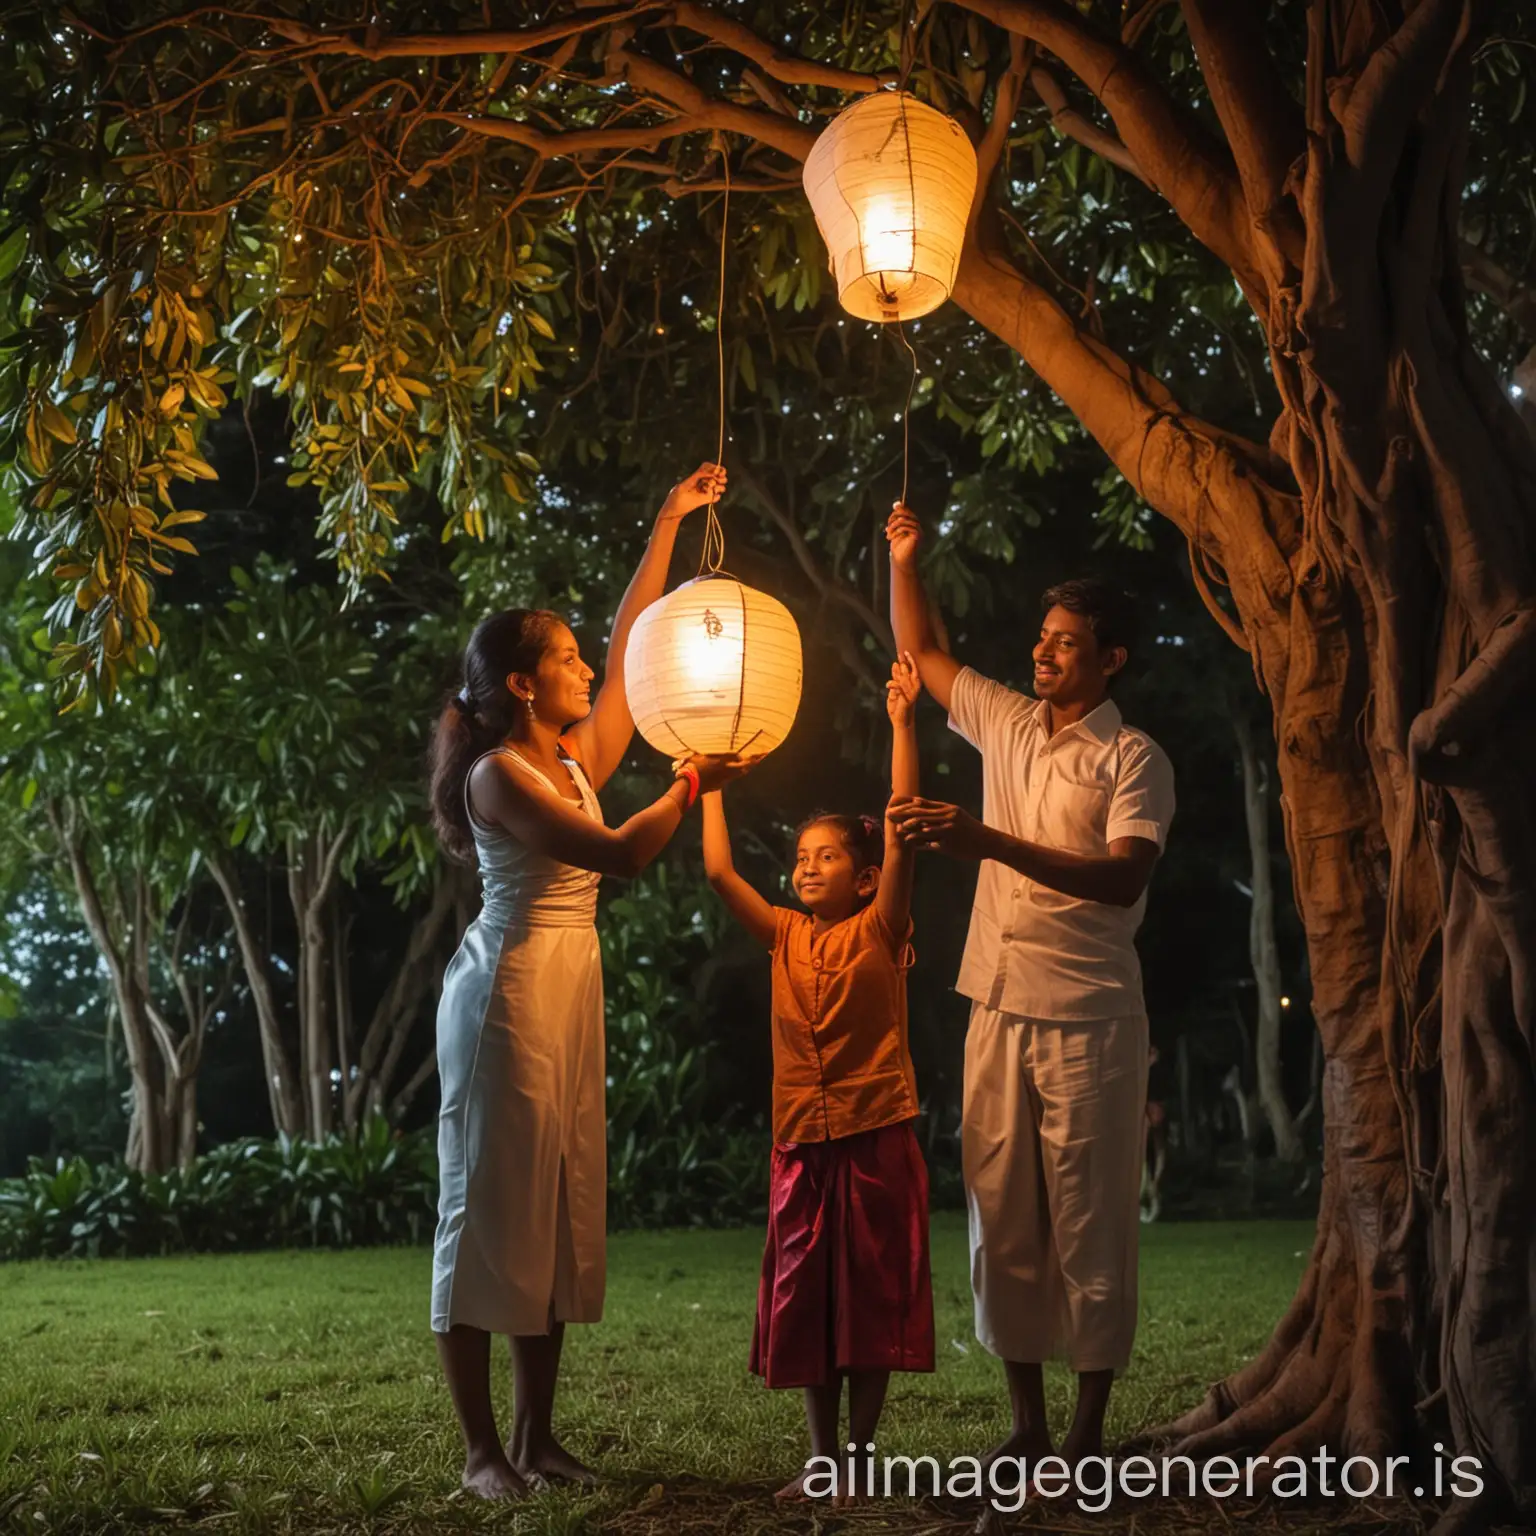 Sri-Lankan-Family-Celebrating-Vesak-Festival-with-Lantern-Hanging